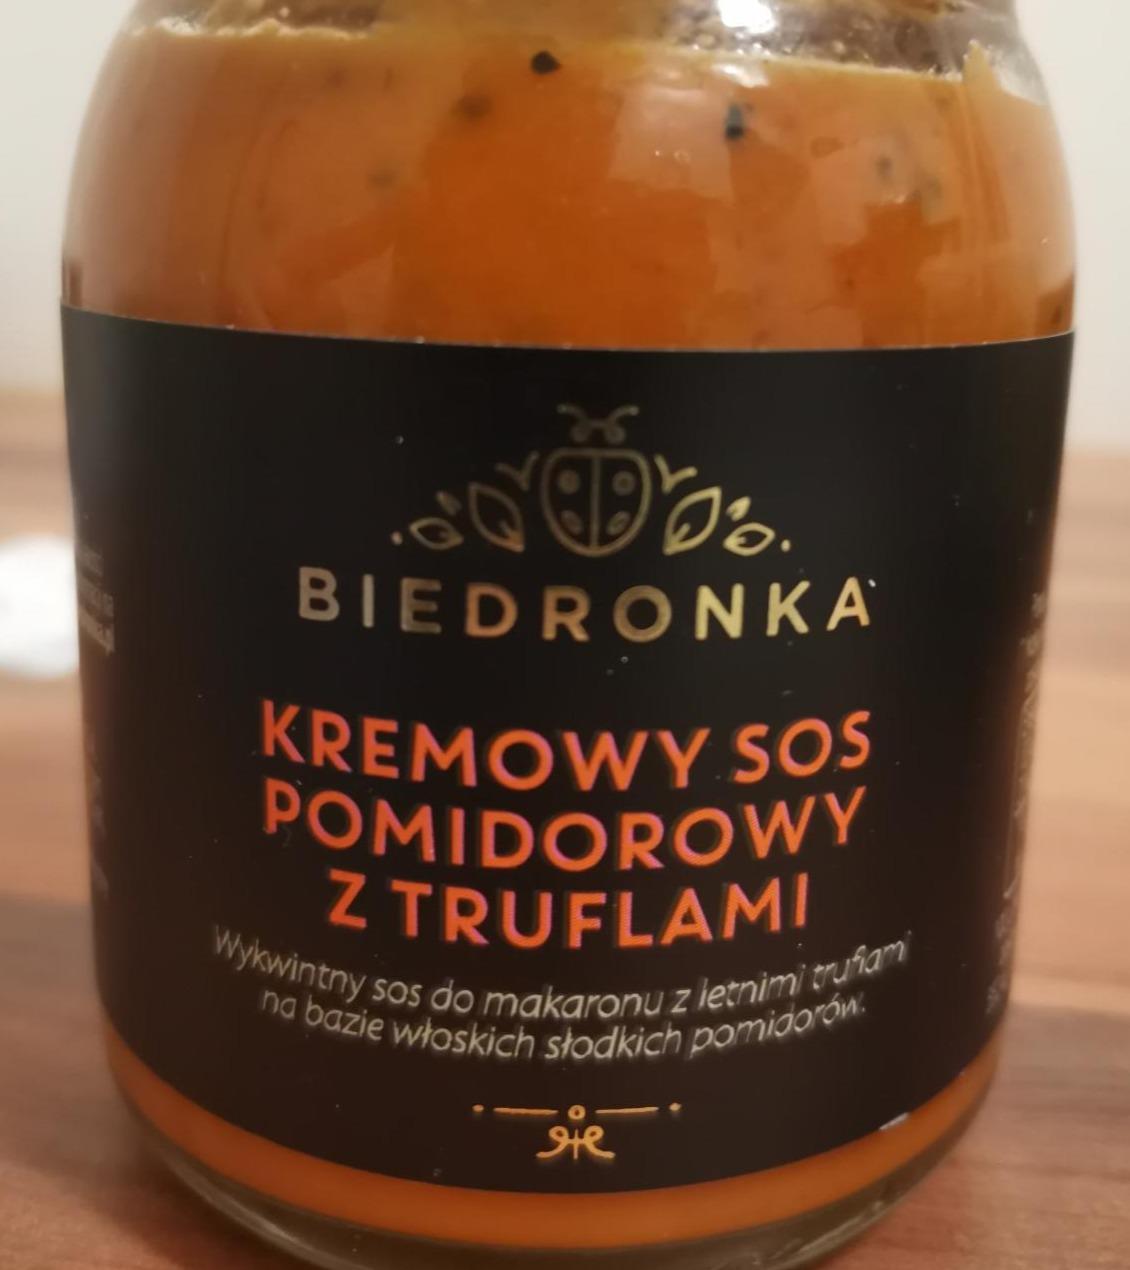 Zdjęcia - Kremowy sos pomidorowy z truflami Biedronka